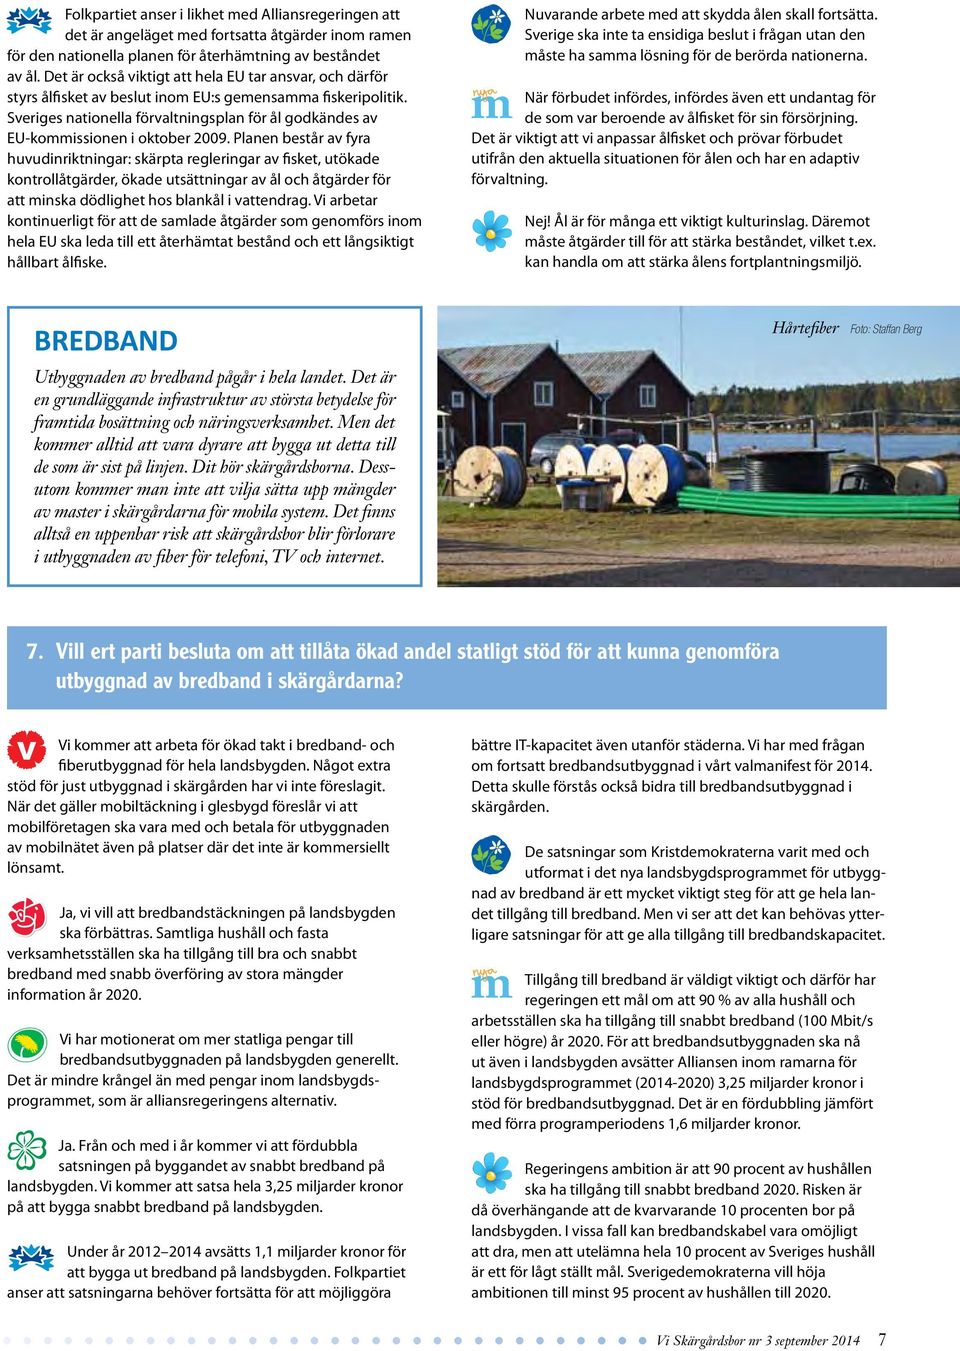 Sveriges nationella förvaltningsplan för ål godkändes av EU-kommissionen i oktober 2009.